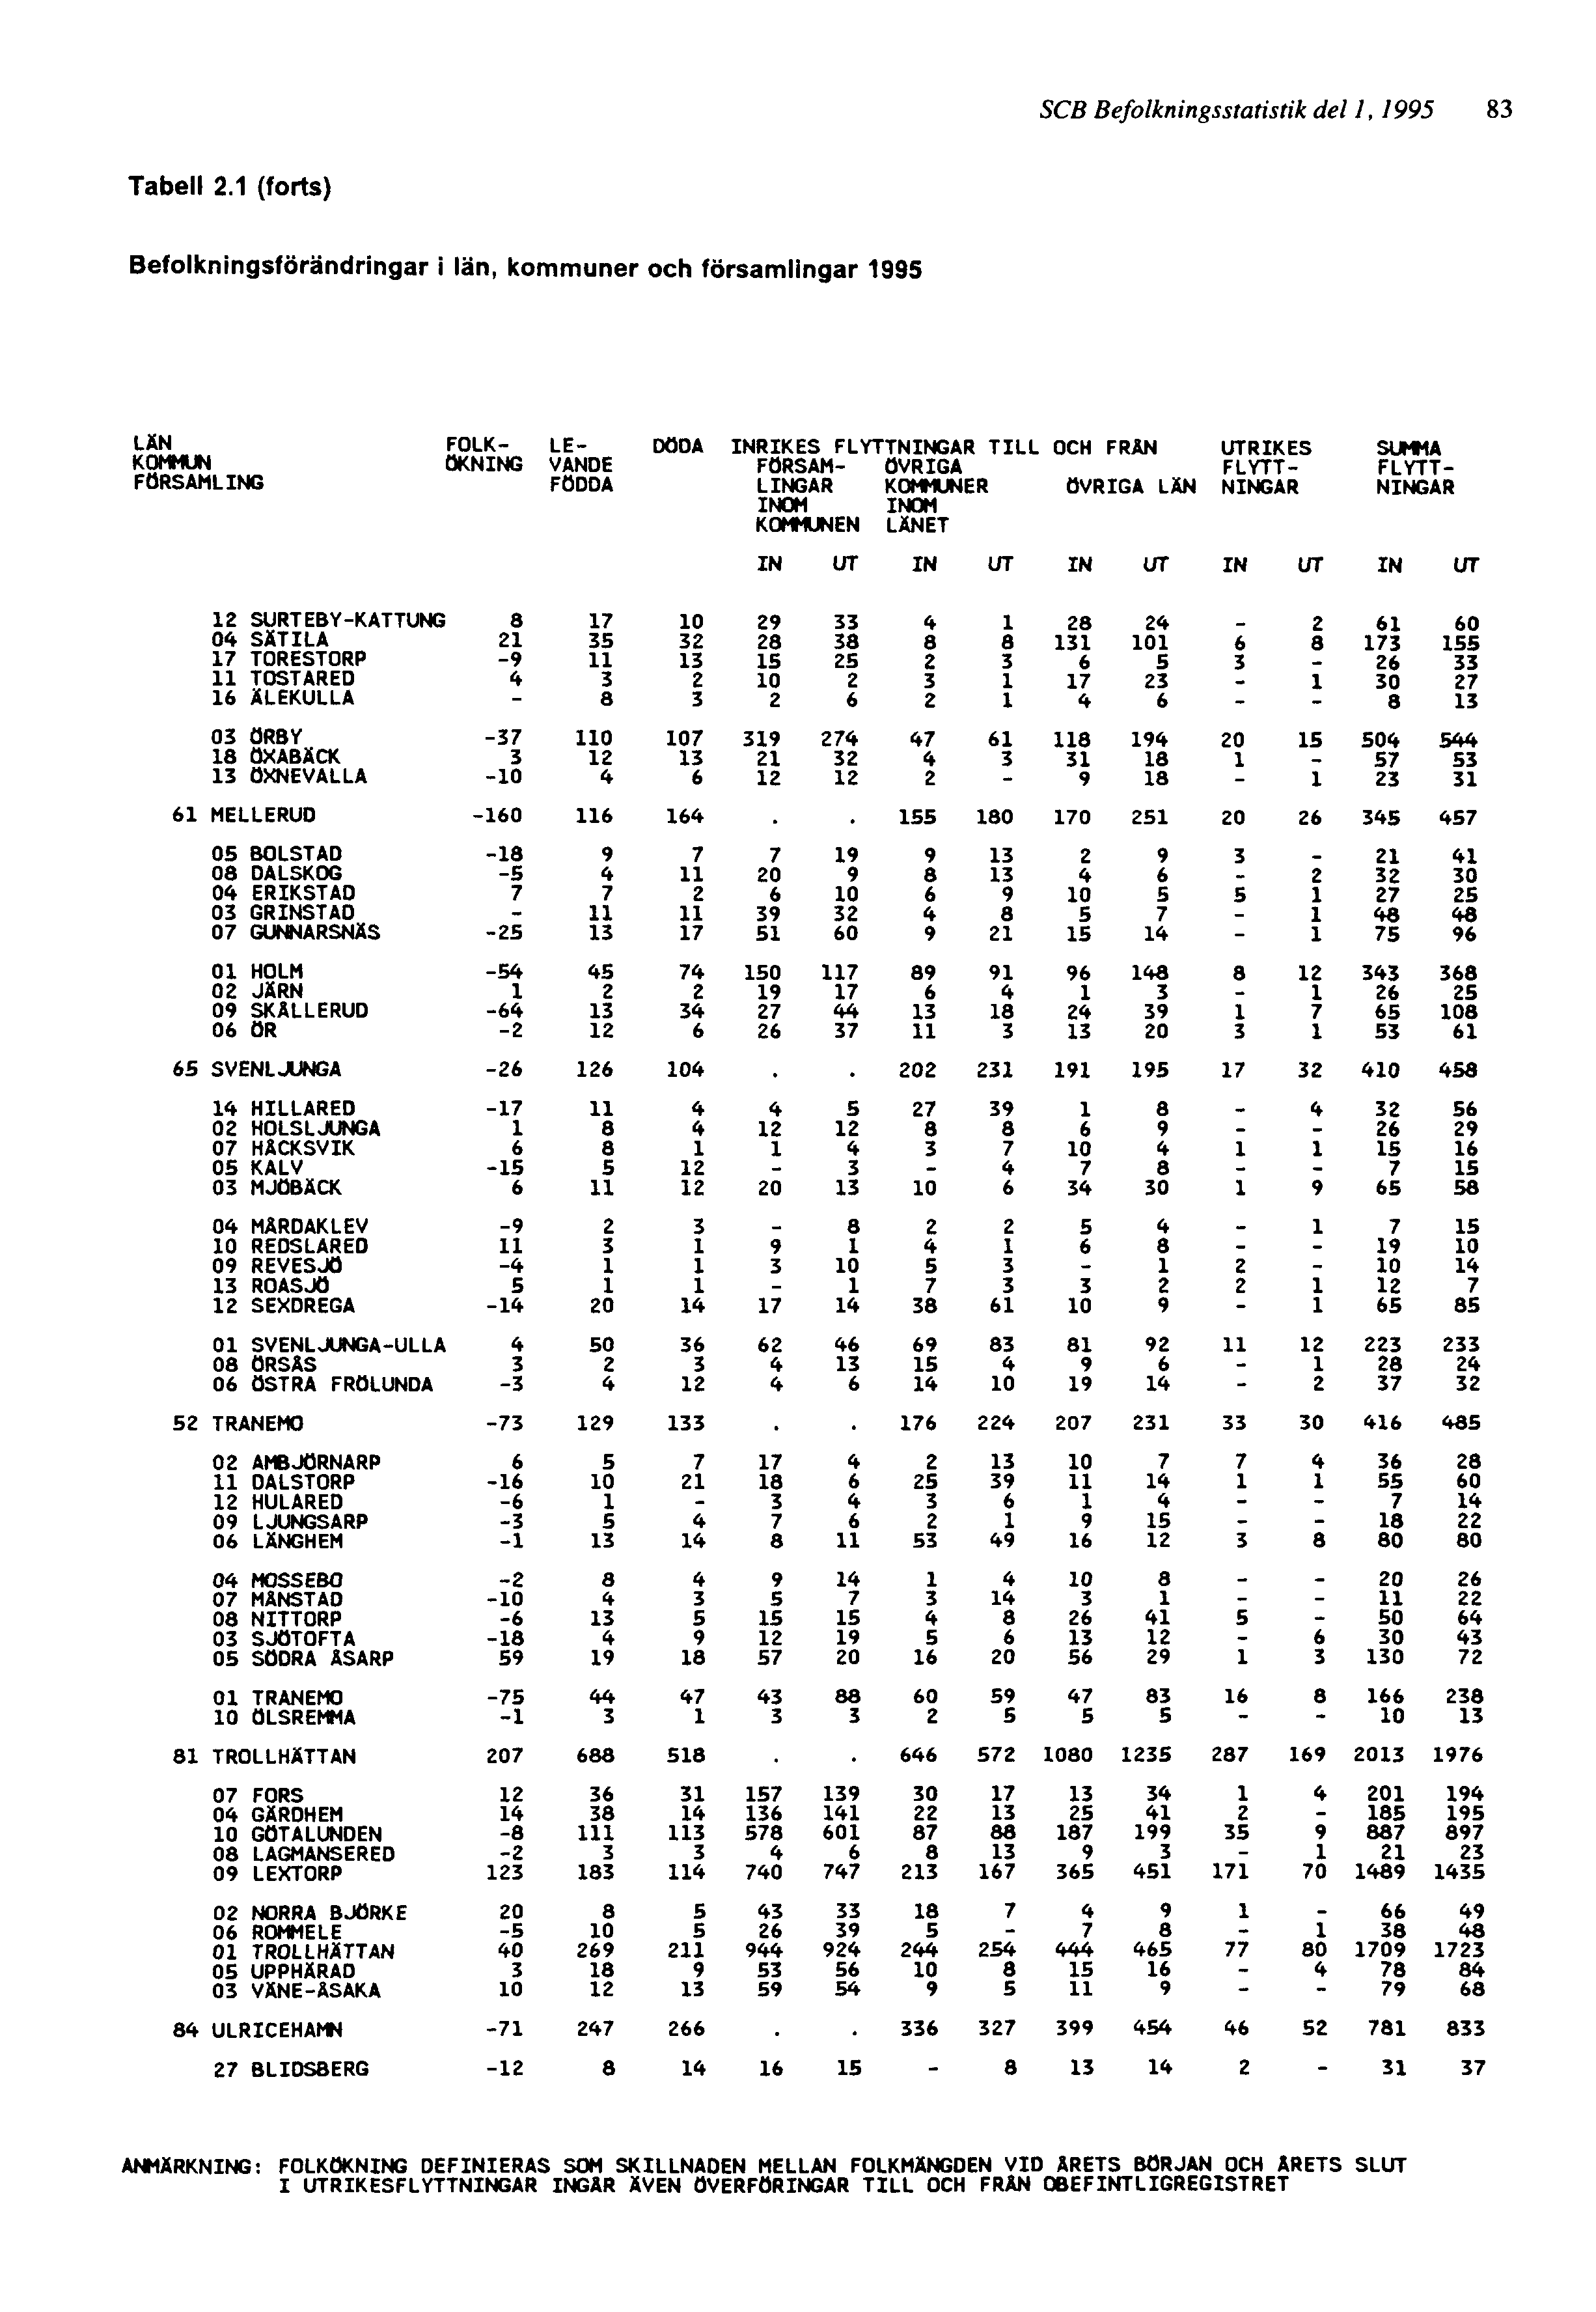 SCB Befolkningsstatistik del 1, 1995 83 ANMÄRKNING: FOLKÖKNING DEFINIERAS SOM SKILLNADEN MELLAN FOLKMÄNGDEN